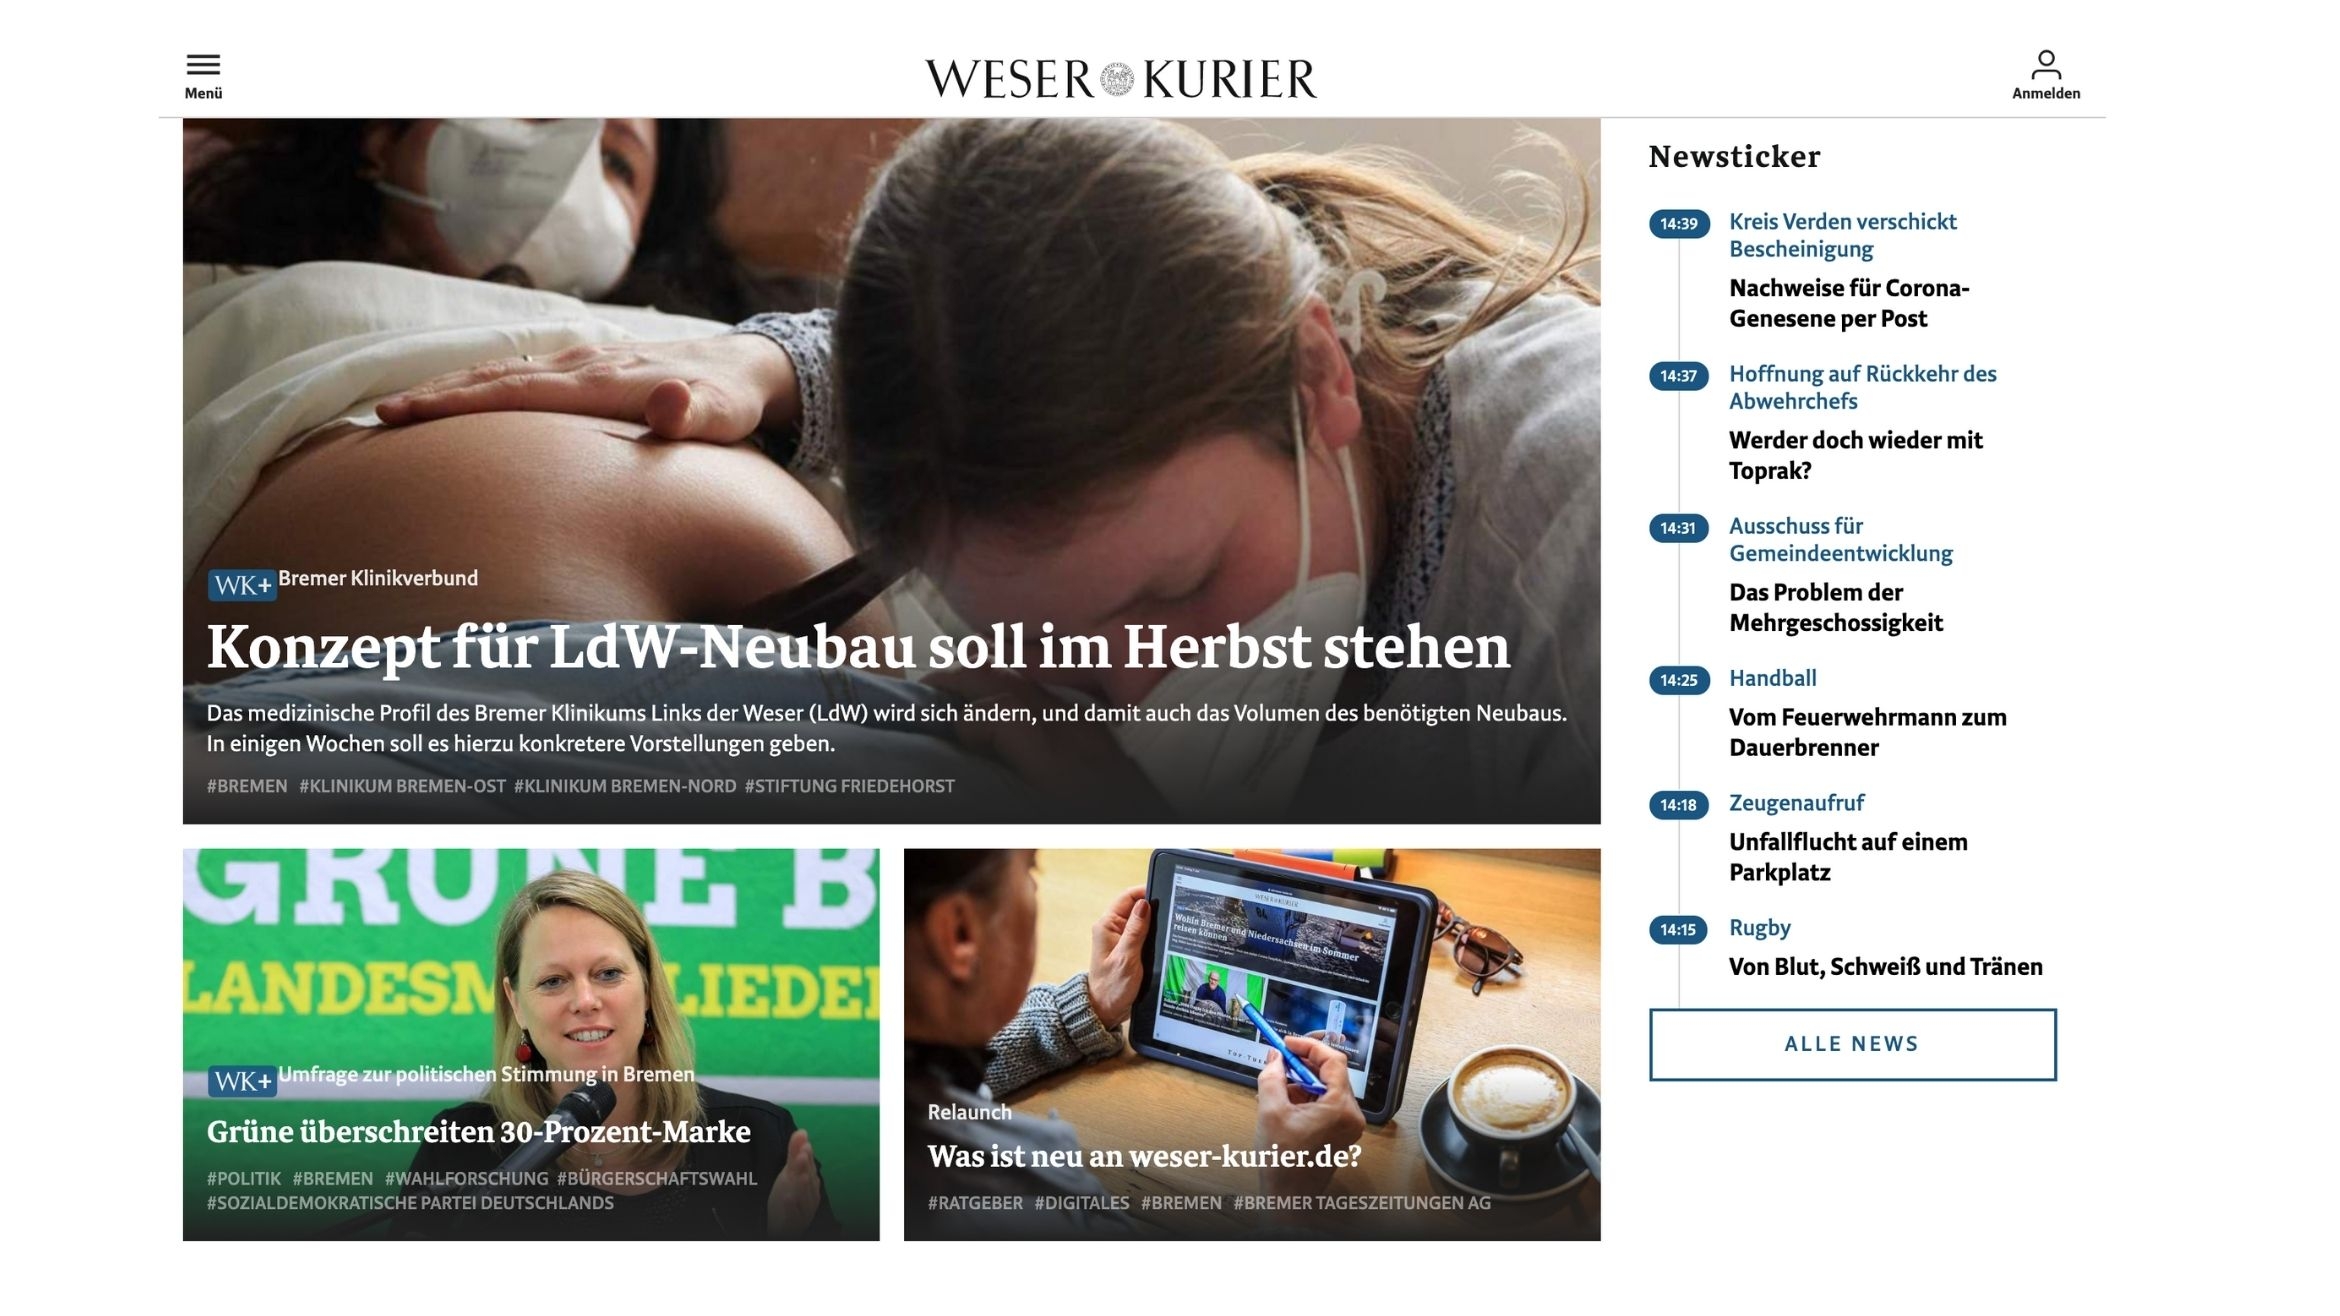 Online-Auftritt des "Weser-Kurier" –